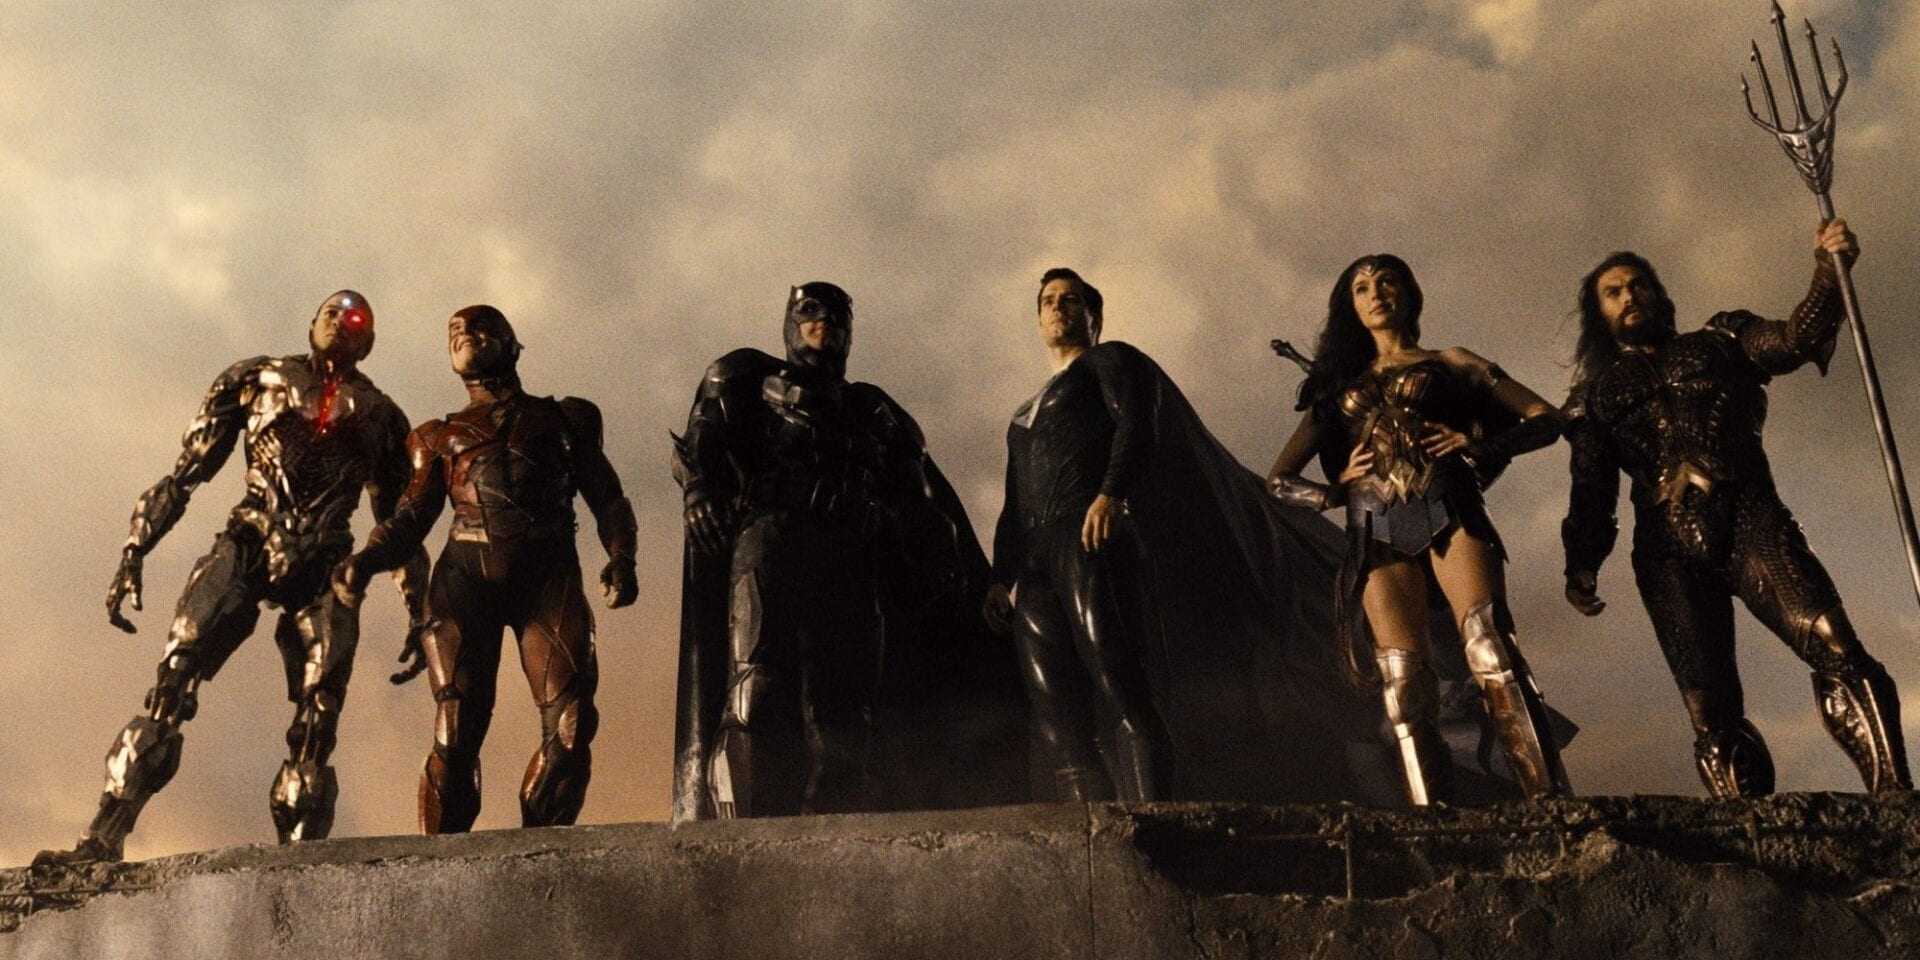 Justice League Snyder Cut – “Darkseid & Steppenwolf”